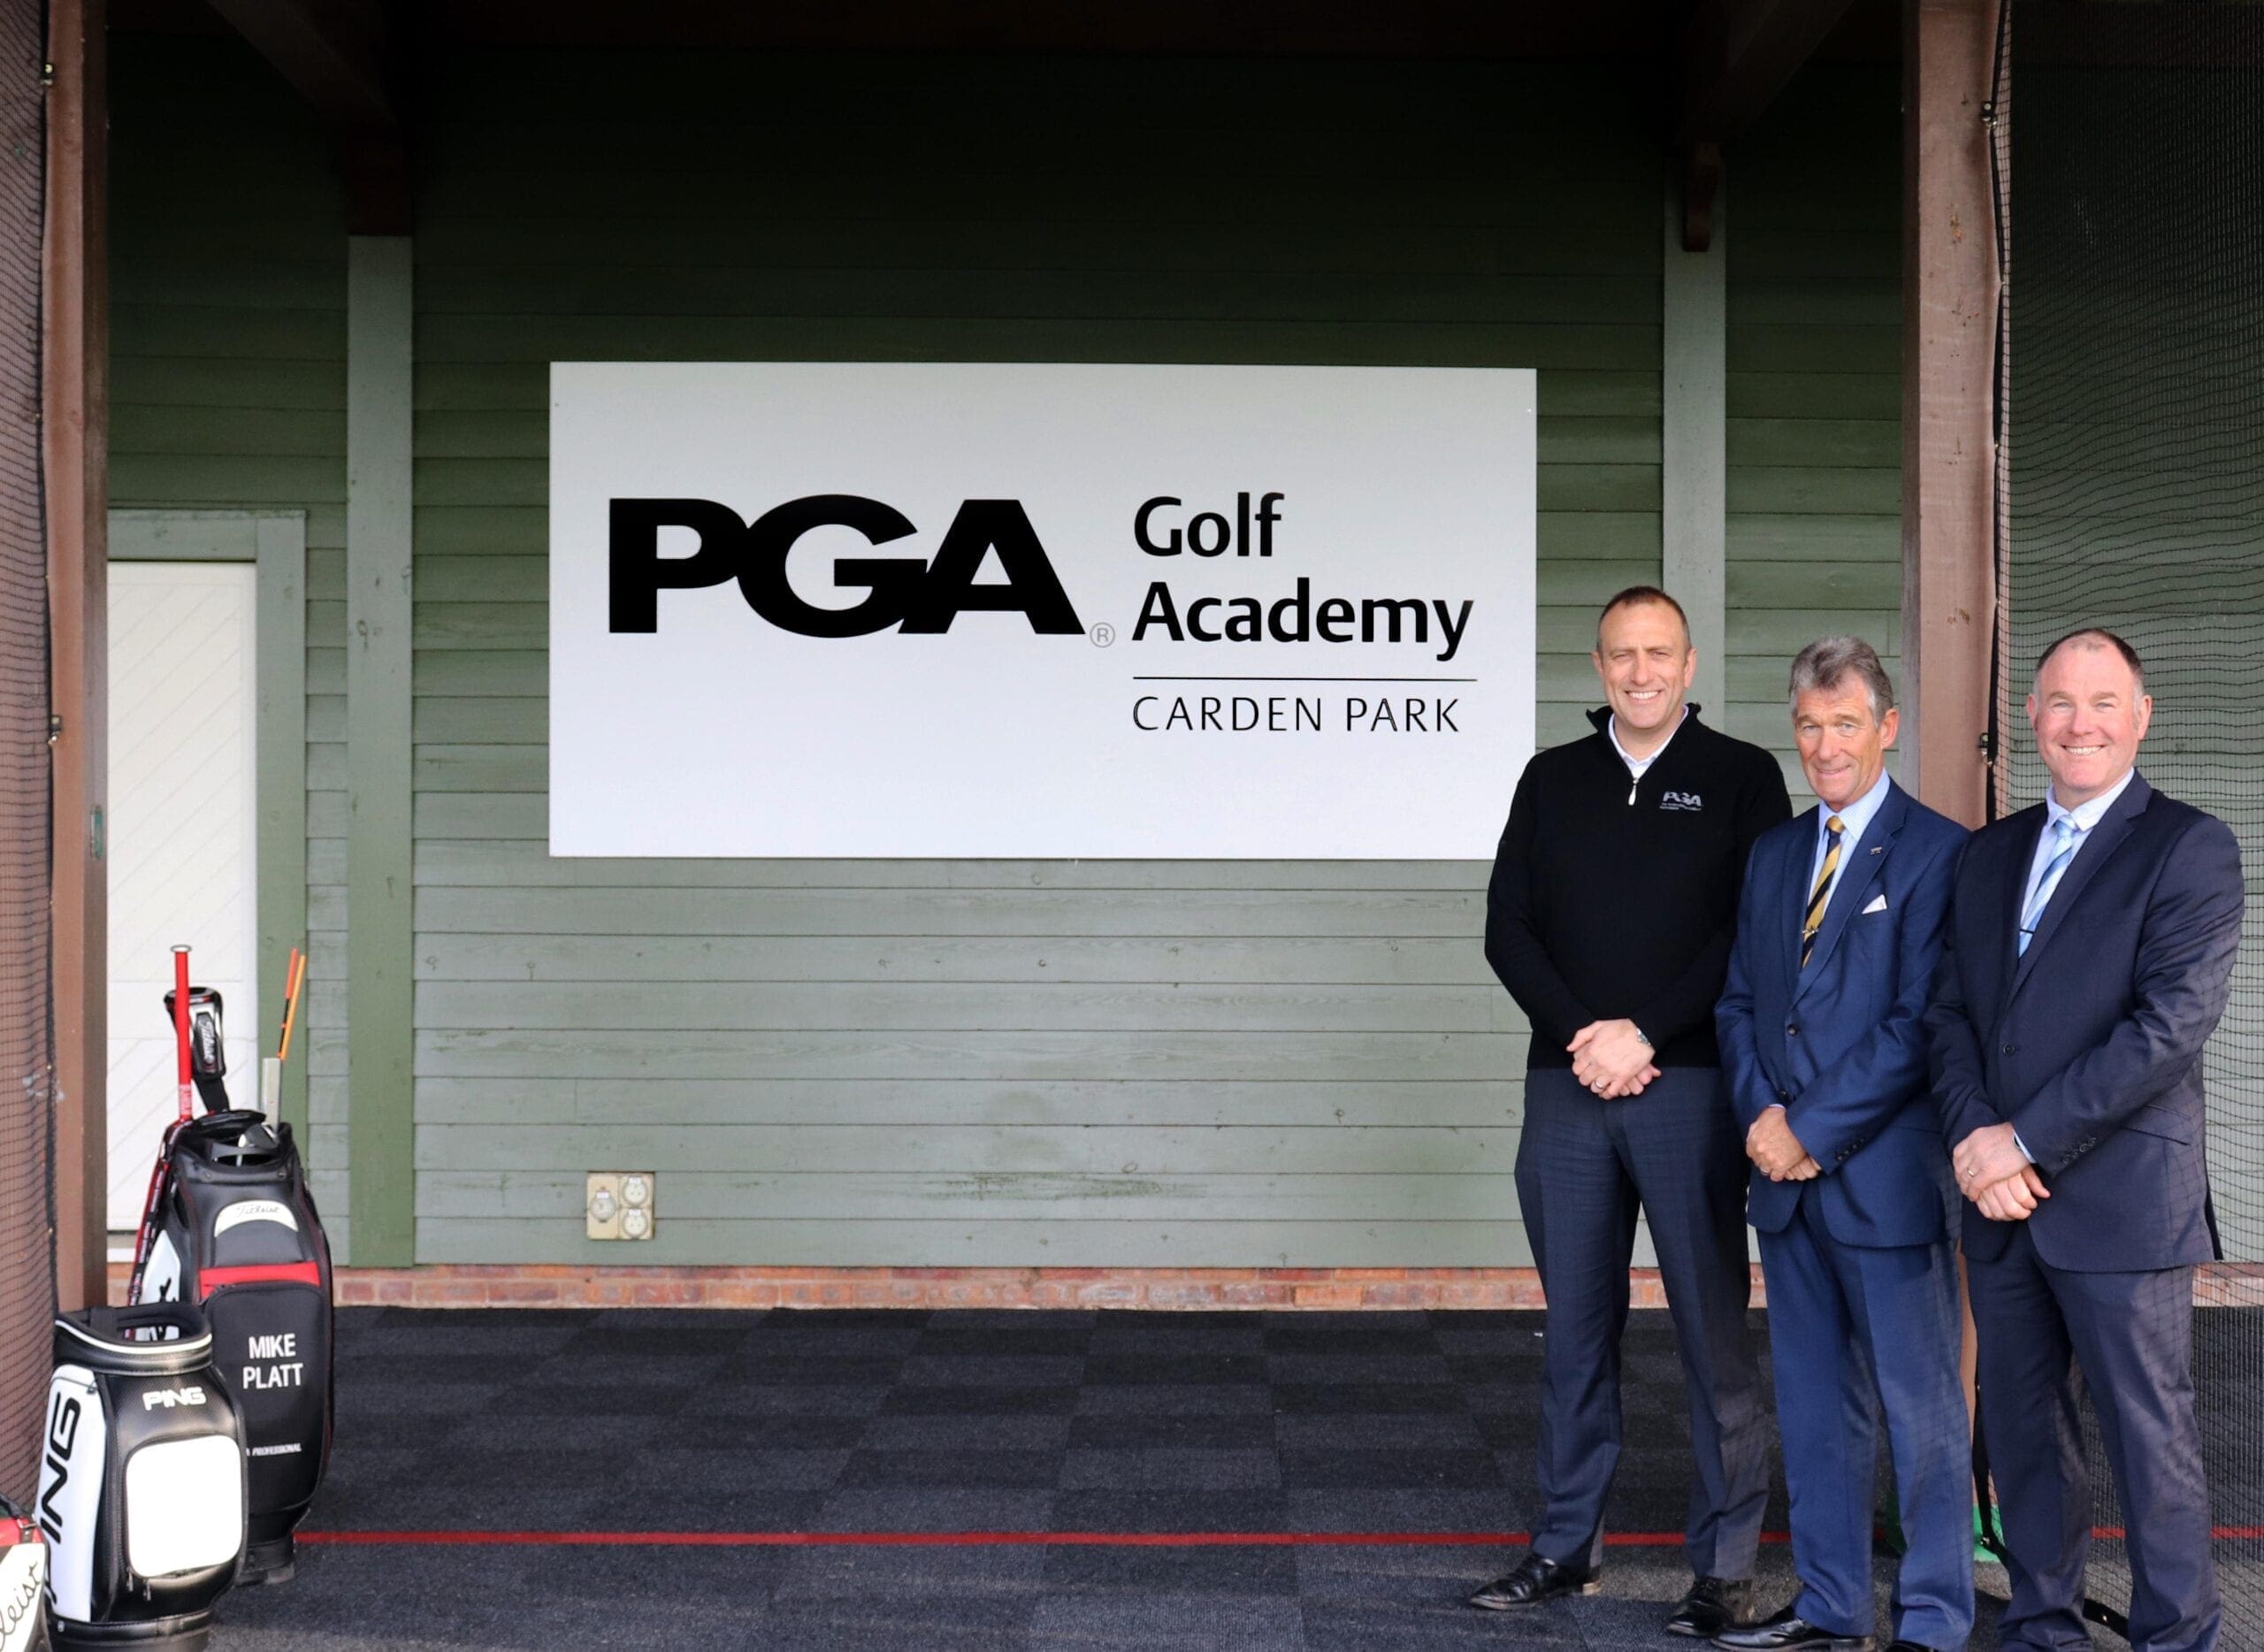 PGA Golf Academy